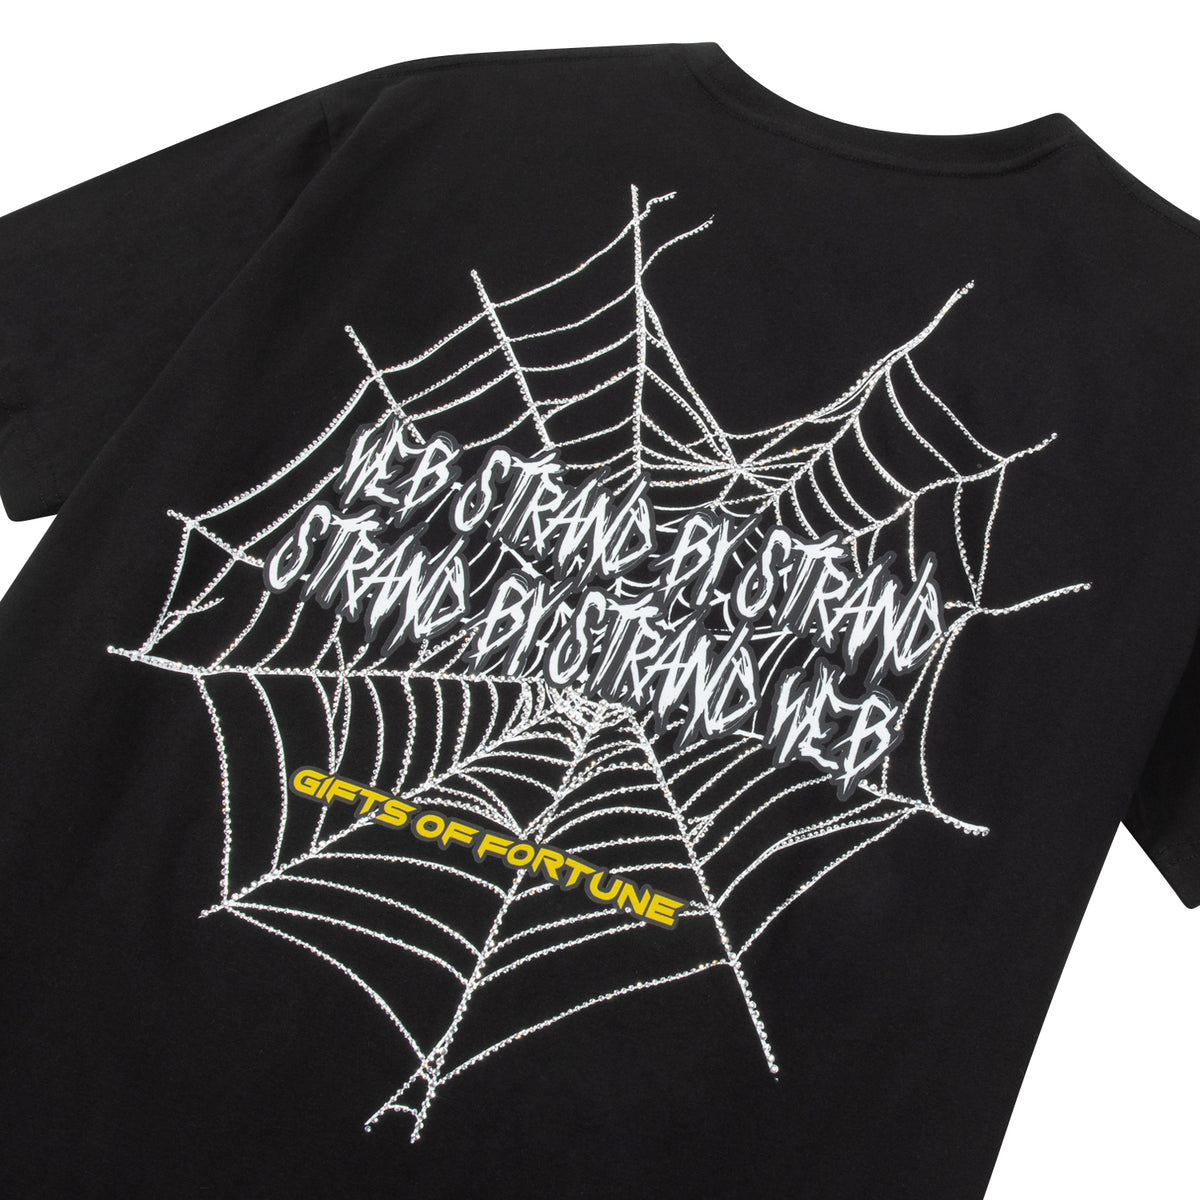 spiderweb graphic shirt 